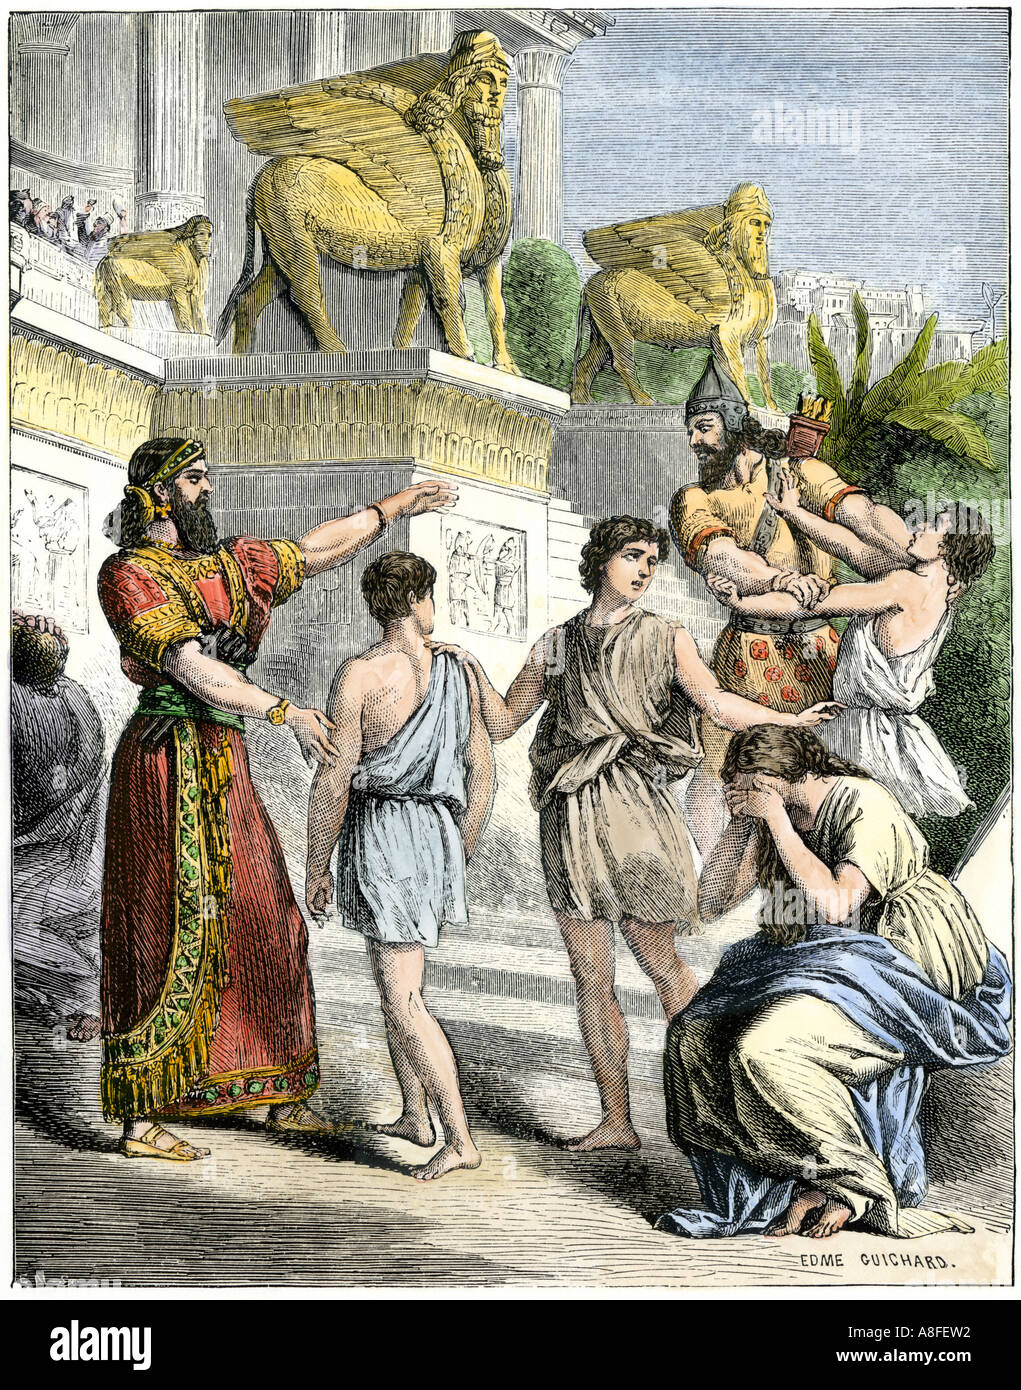 Les esclaves Israélites pendant la captivité babylonienne après la chute de Jérusalem en 586 avant JC. À la main, gravure sur bois Banque D'Images